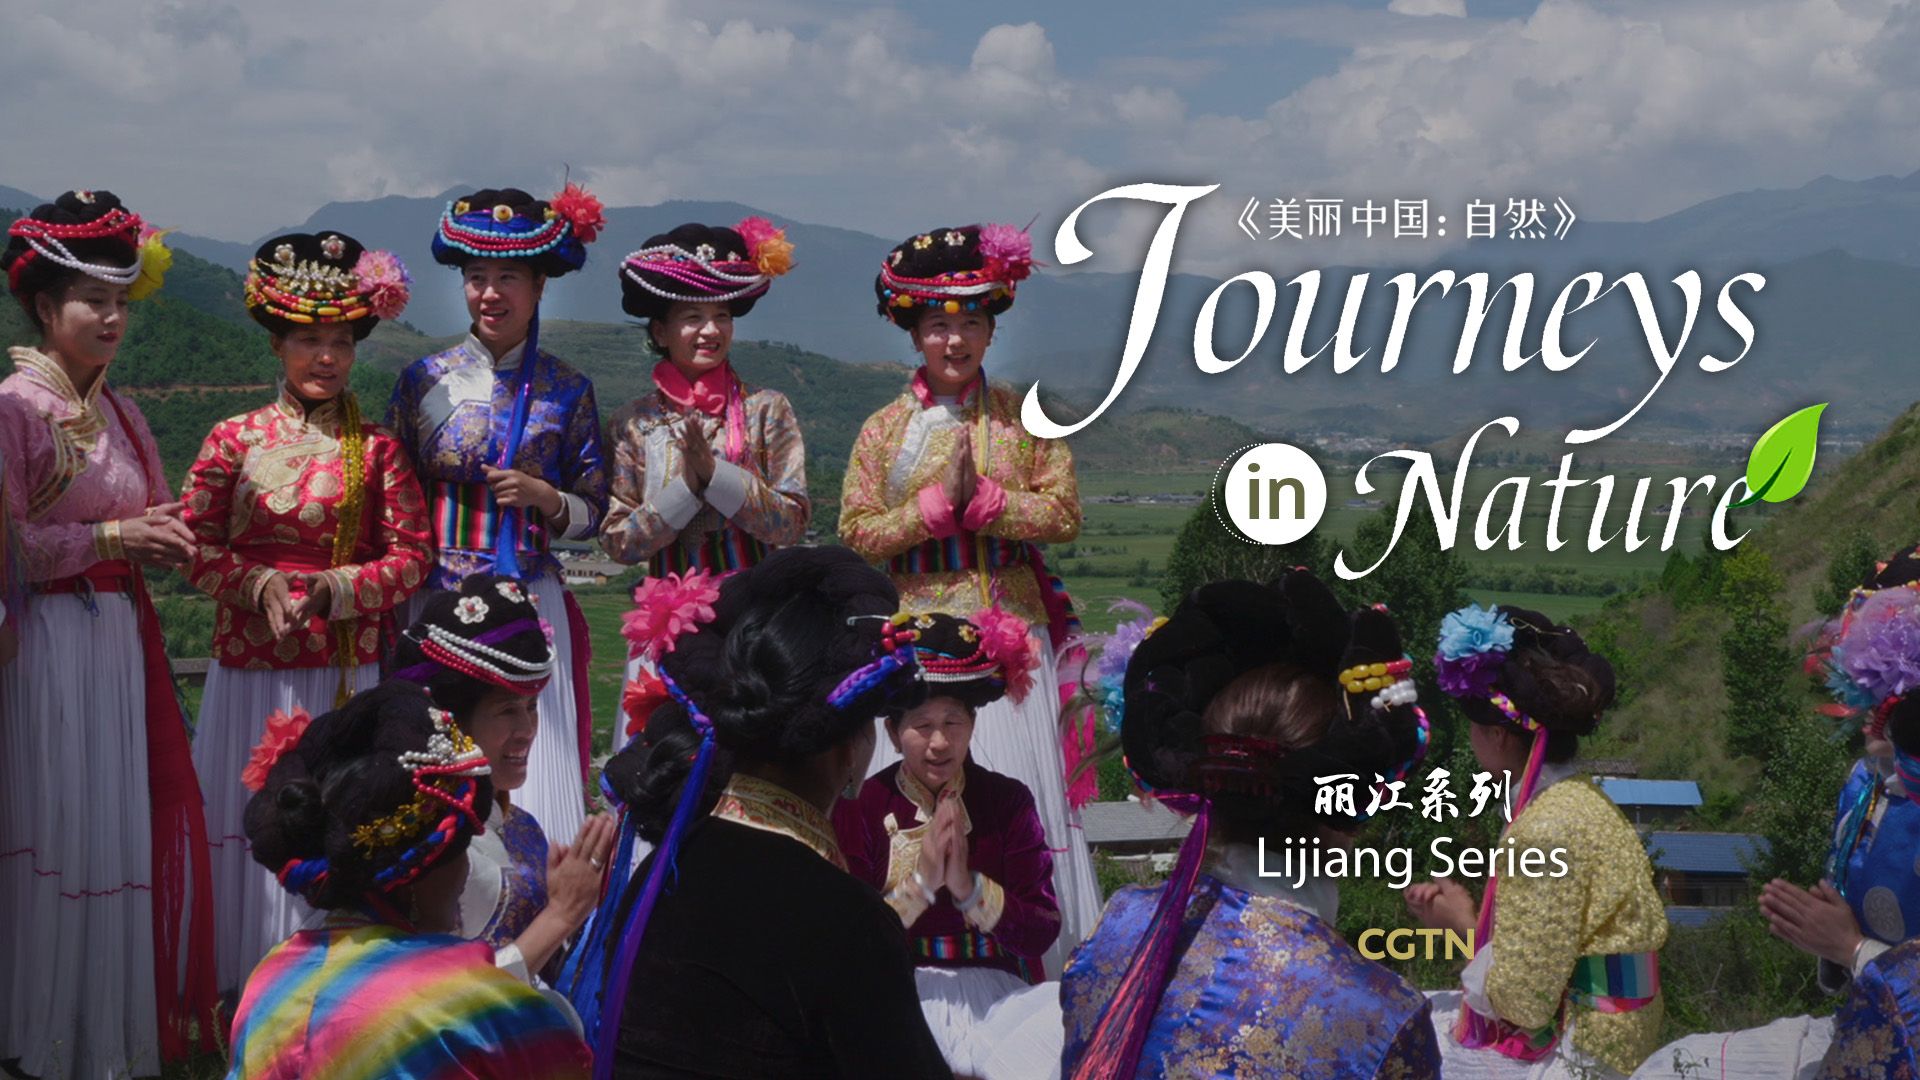 CGTN Nature presents 'Journeys in Nature: Lijiang Series'